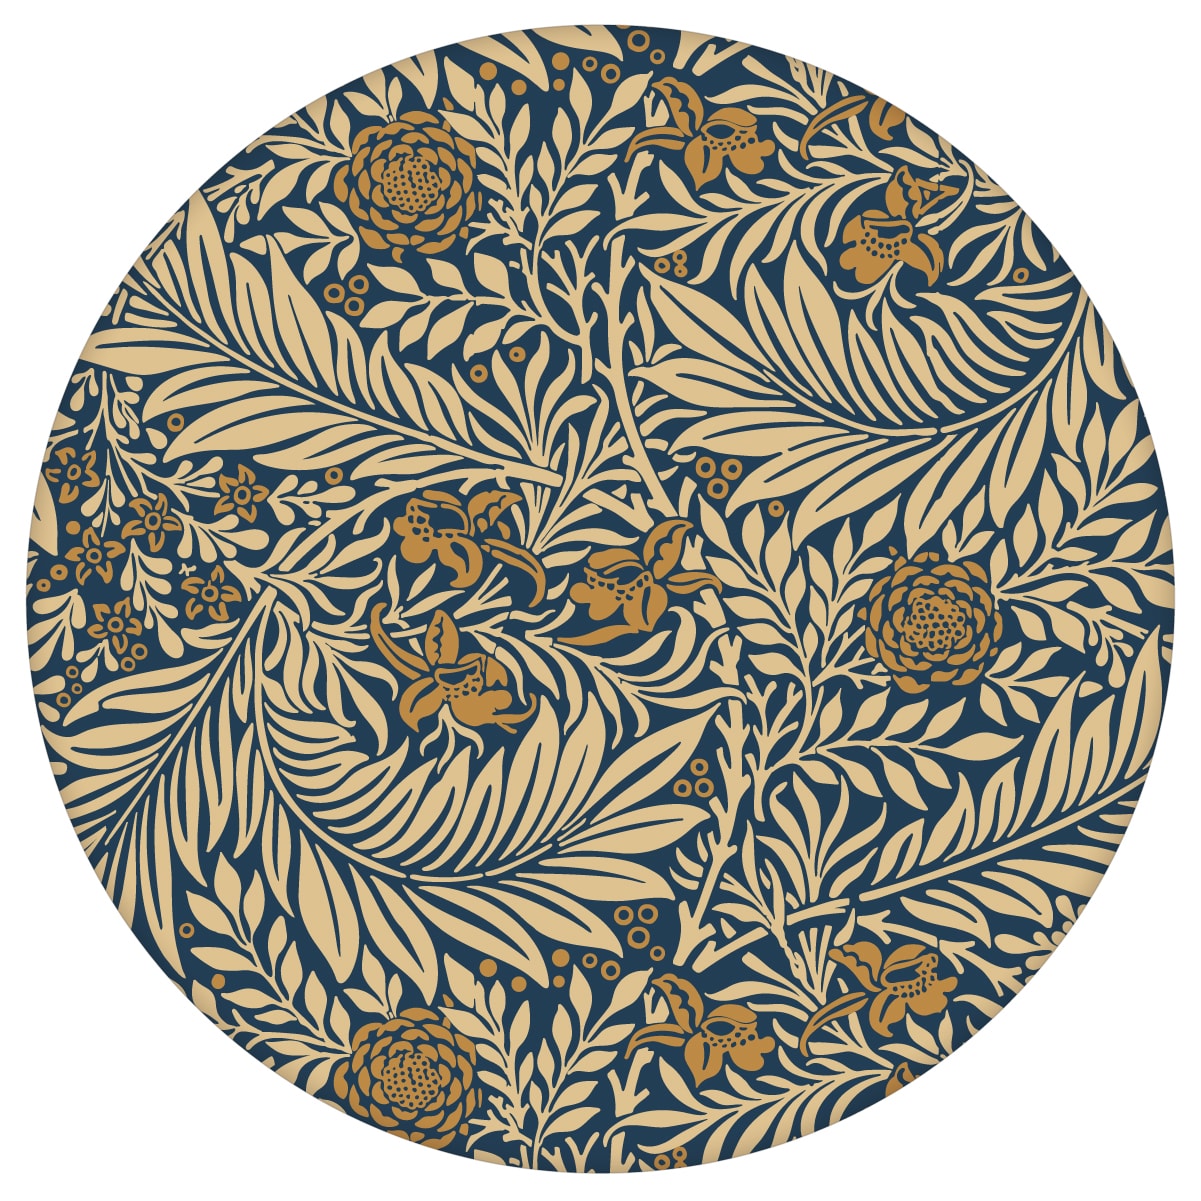 Feine Jugendstil Tapete "Délice florale" nach William Morris, dunkelblau beige Vlies-Tapete, großer Rapport Wanddeko für Wohnzimmer